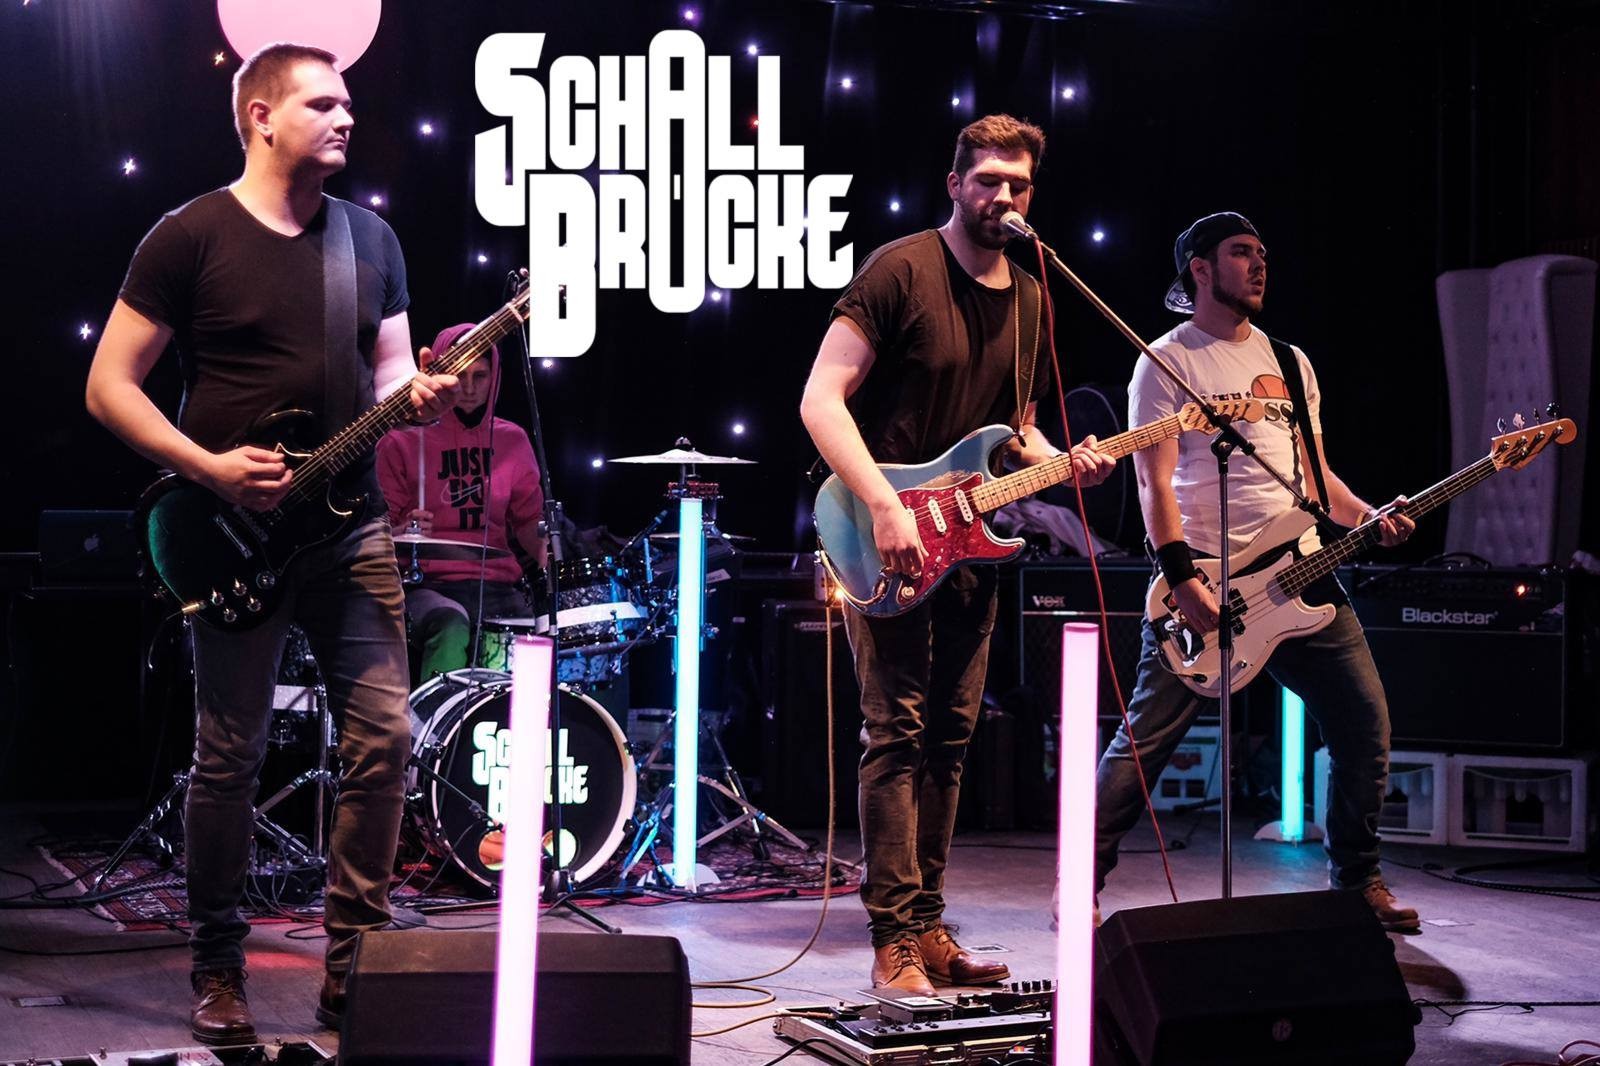 18.07.2019 - Schallbrücke LIVE, Das Wohnzimmer, Wiesbaden